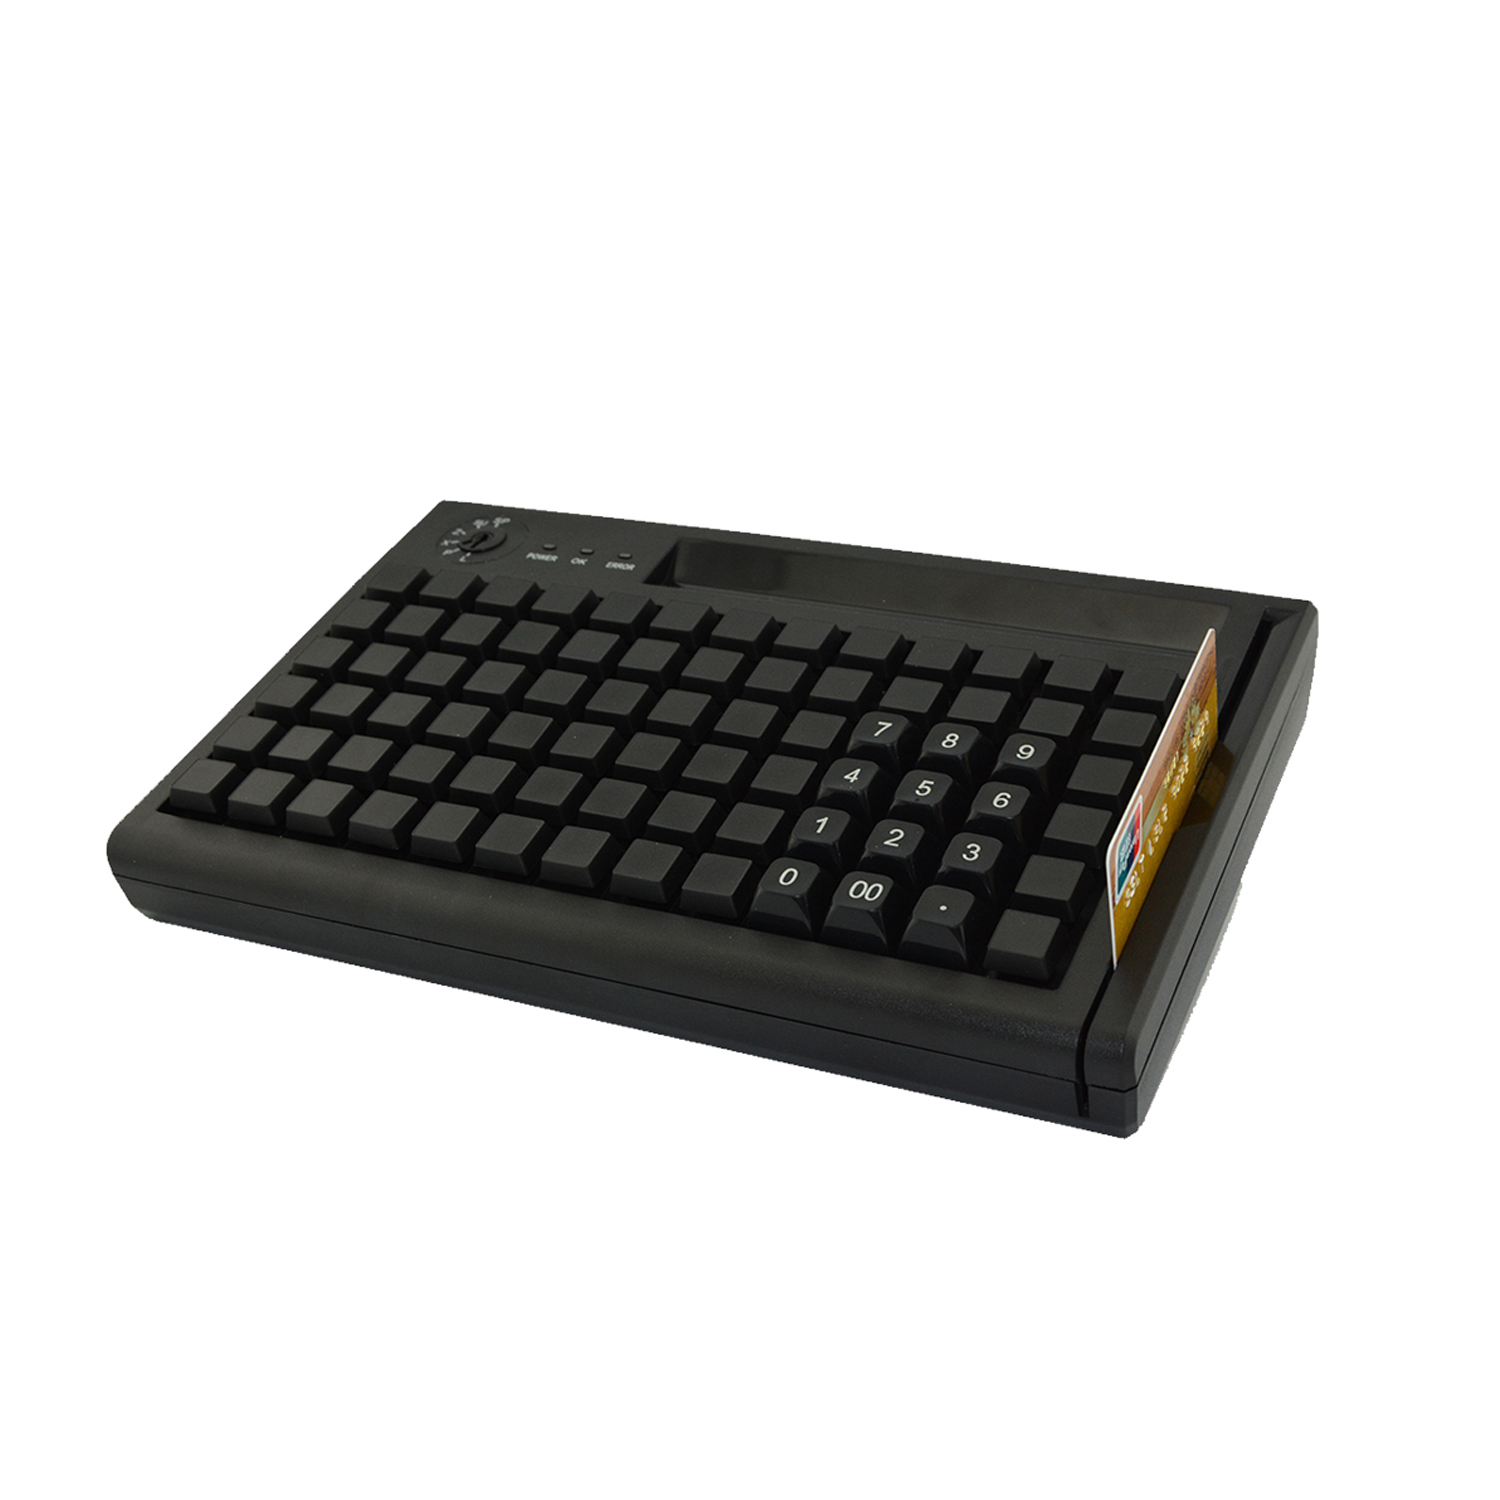 78键 USB PS/2 编程 POS 键盘带磁条读卡器 KB78M-S